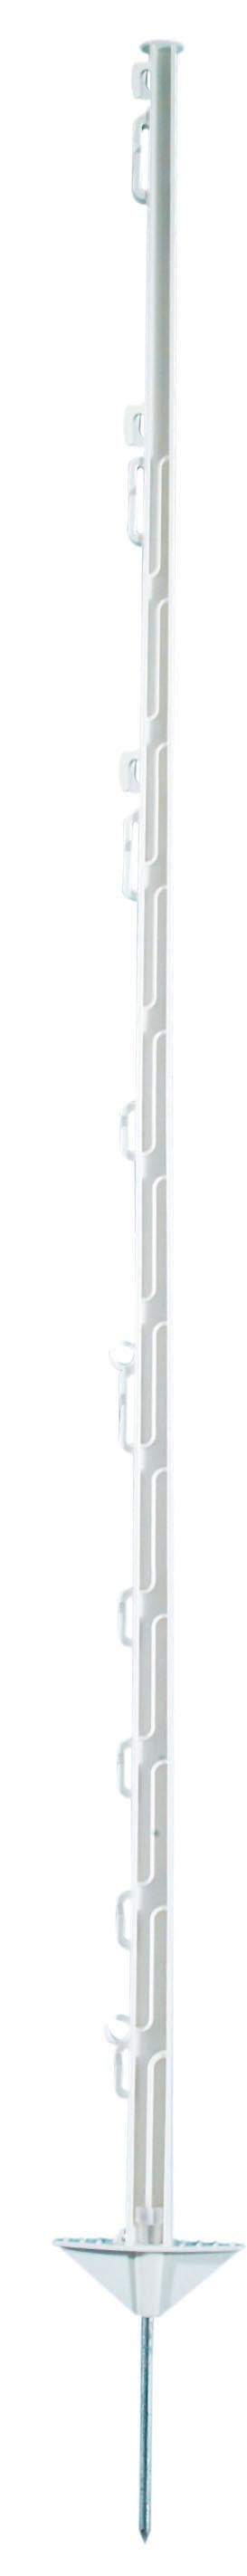 10 Stk. Kunststoffpfahl weiß 150 cm, 10er Bund - Die Stabilität für Ihren Zaun